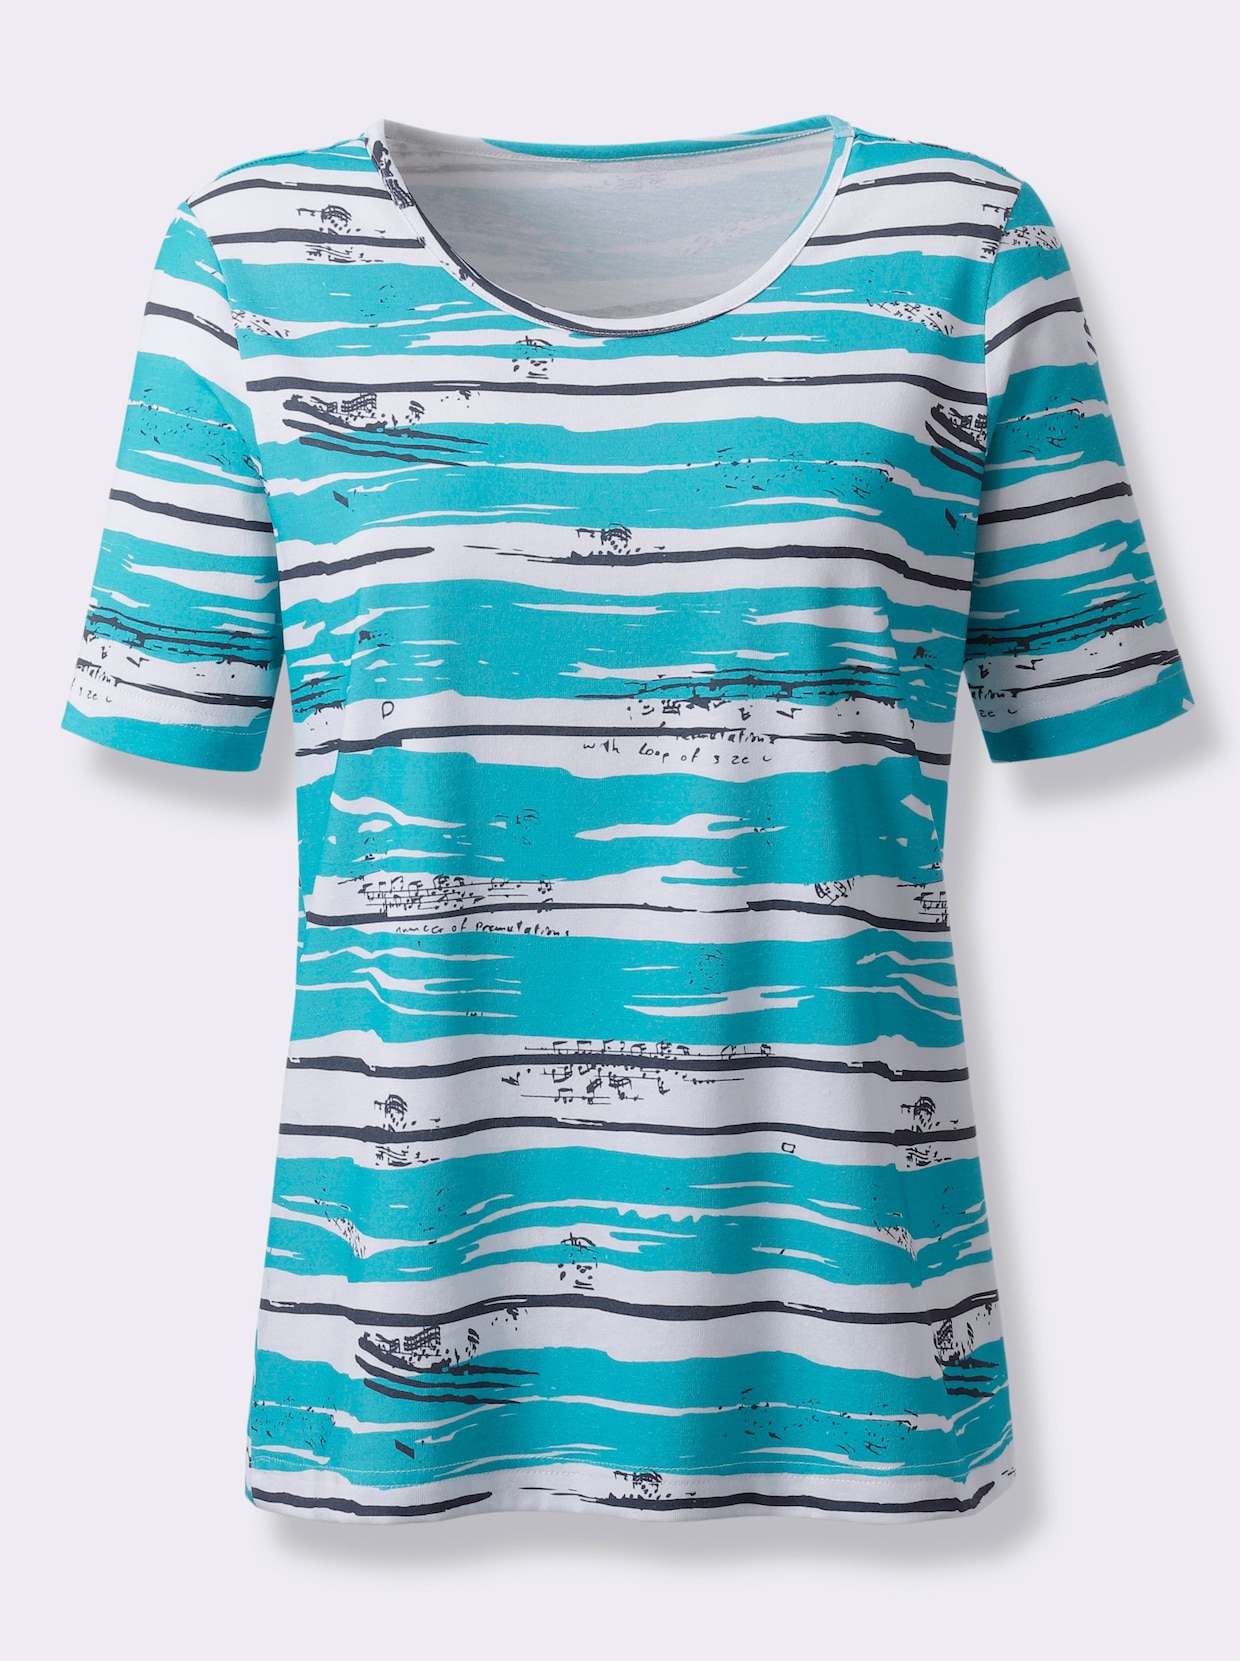 Bedrukt shirt - turquoise/marine bedrukt